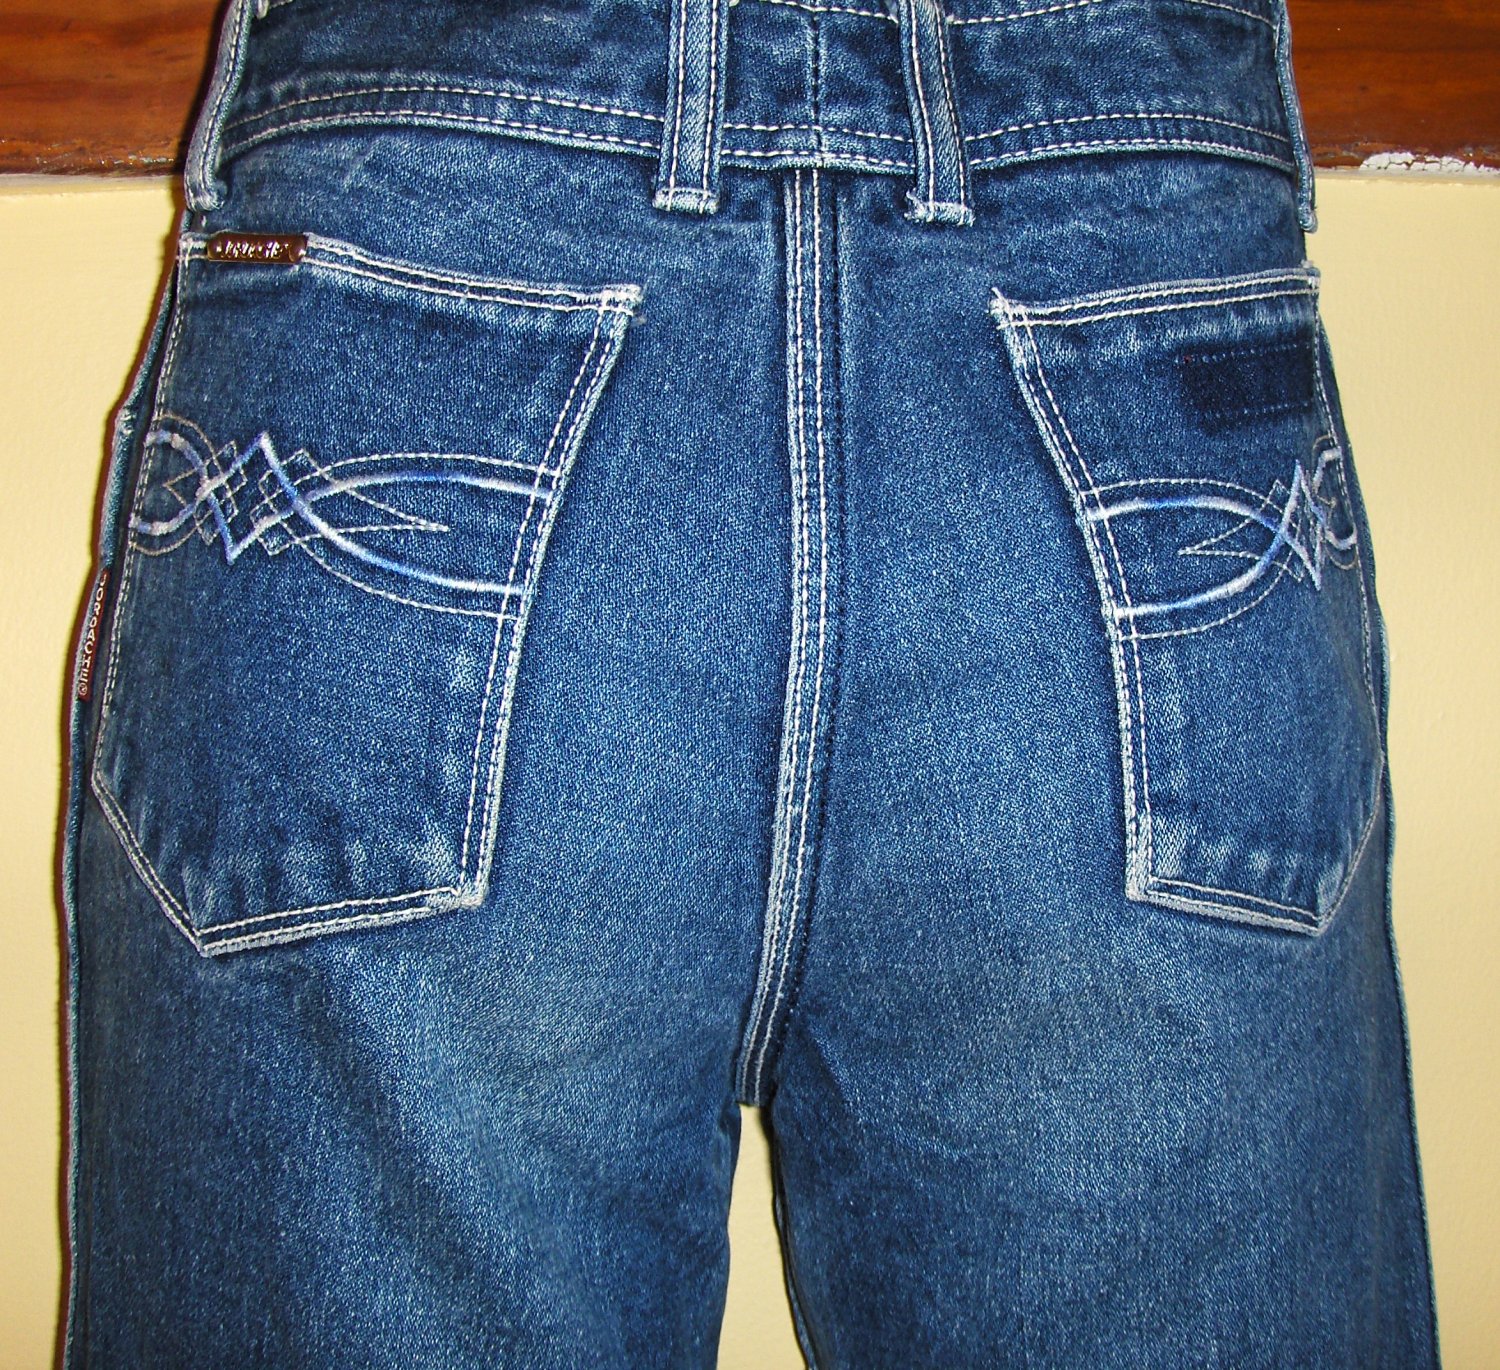 Jordache Jeans 1970s